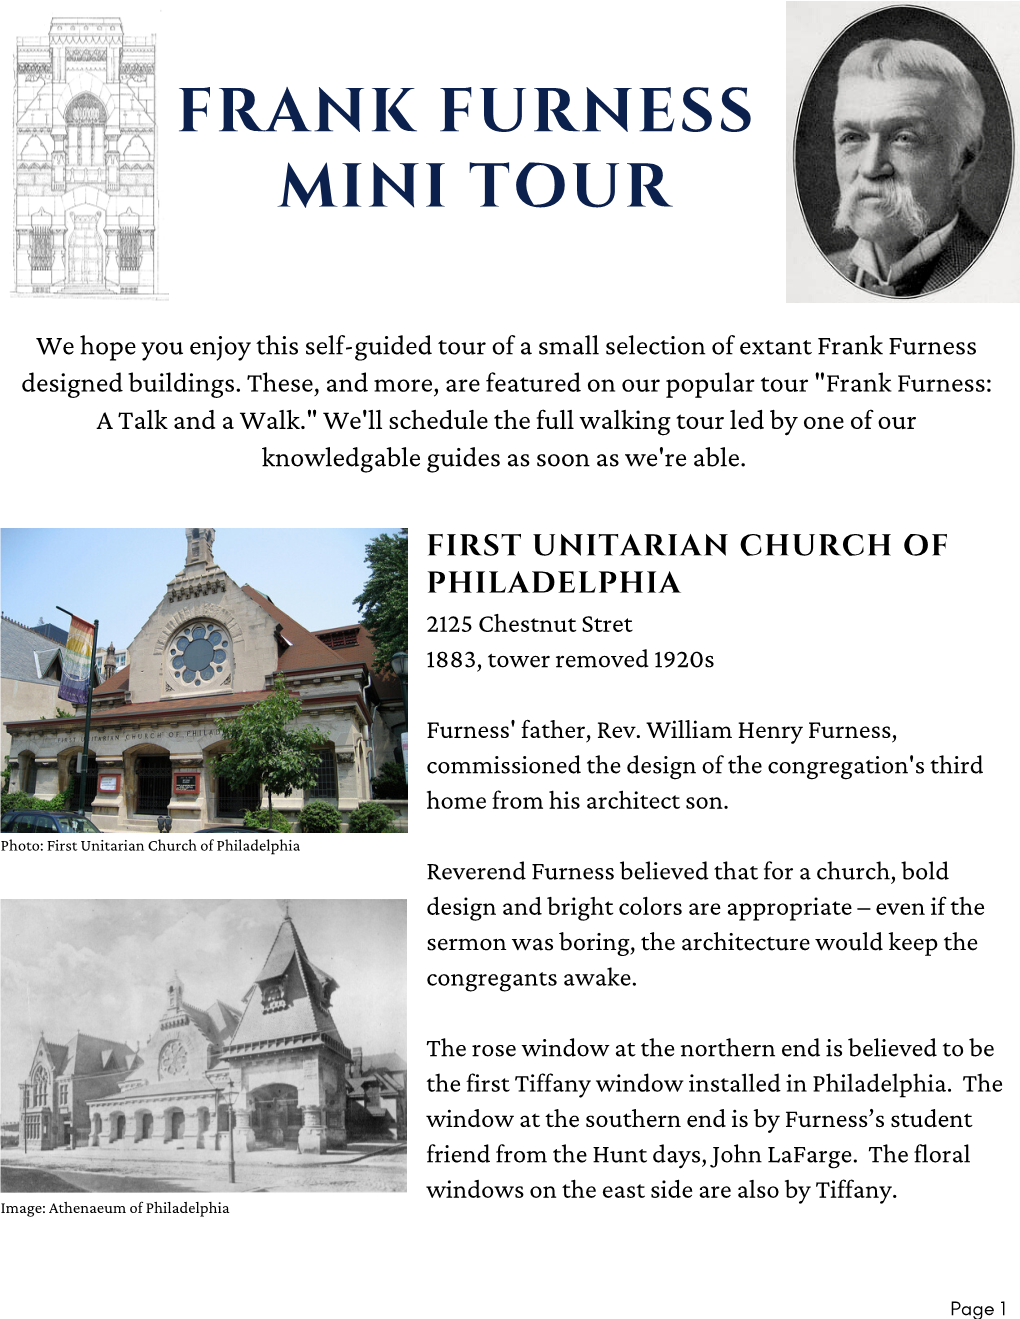 Frank Furness Mini Tour